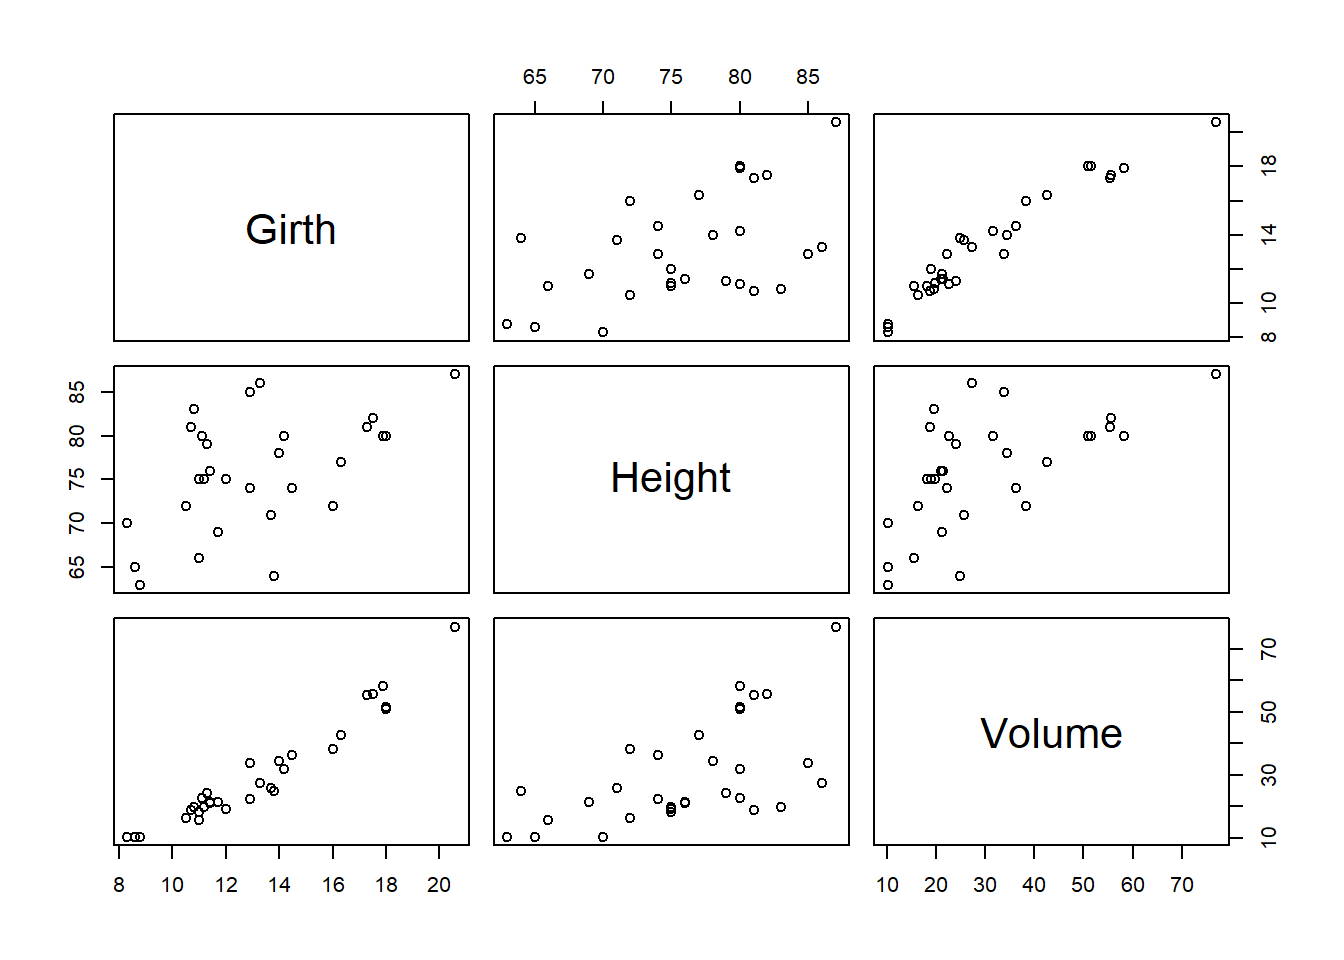 Scatterplot matriks dataset trees